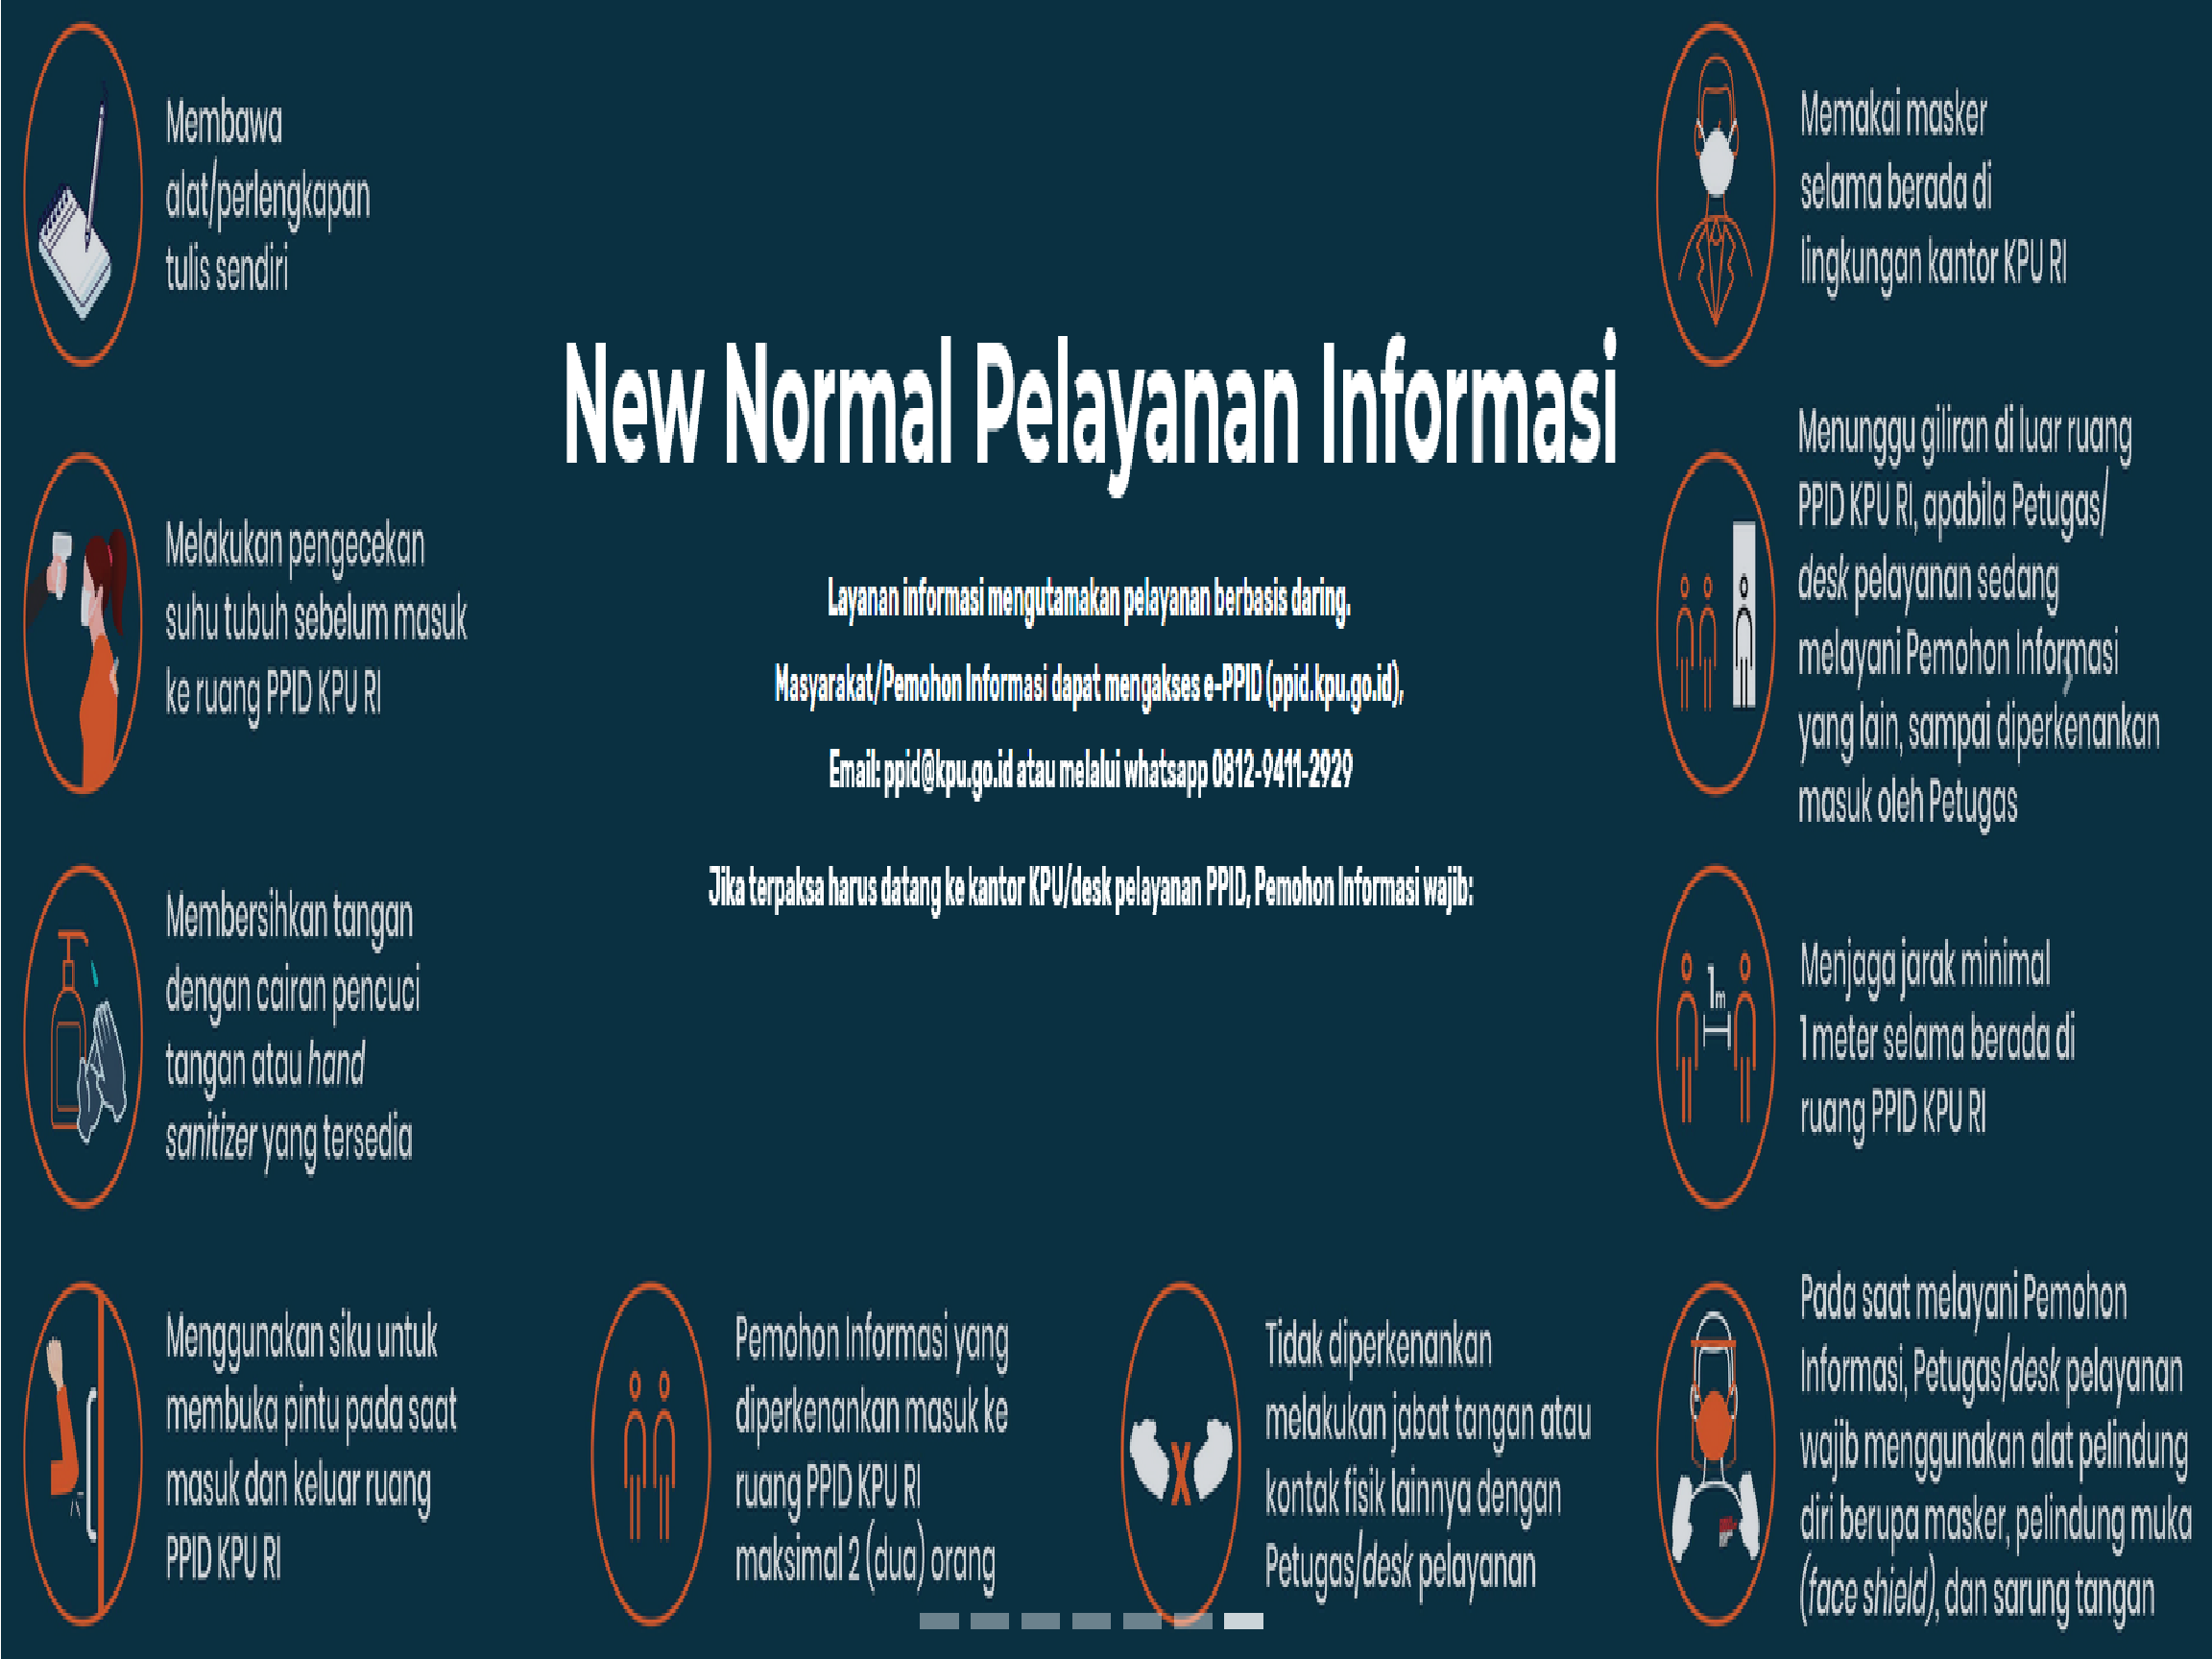 New Normal Pelayanan Informasi